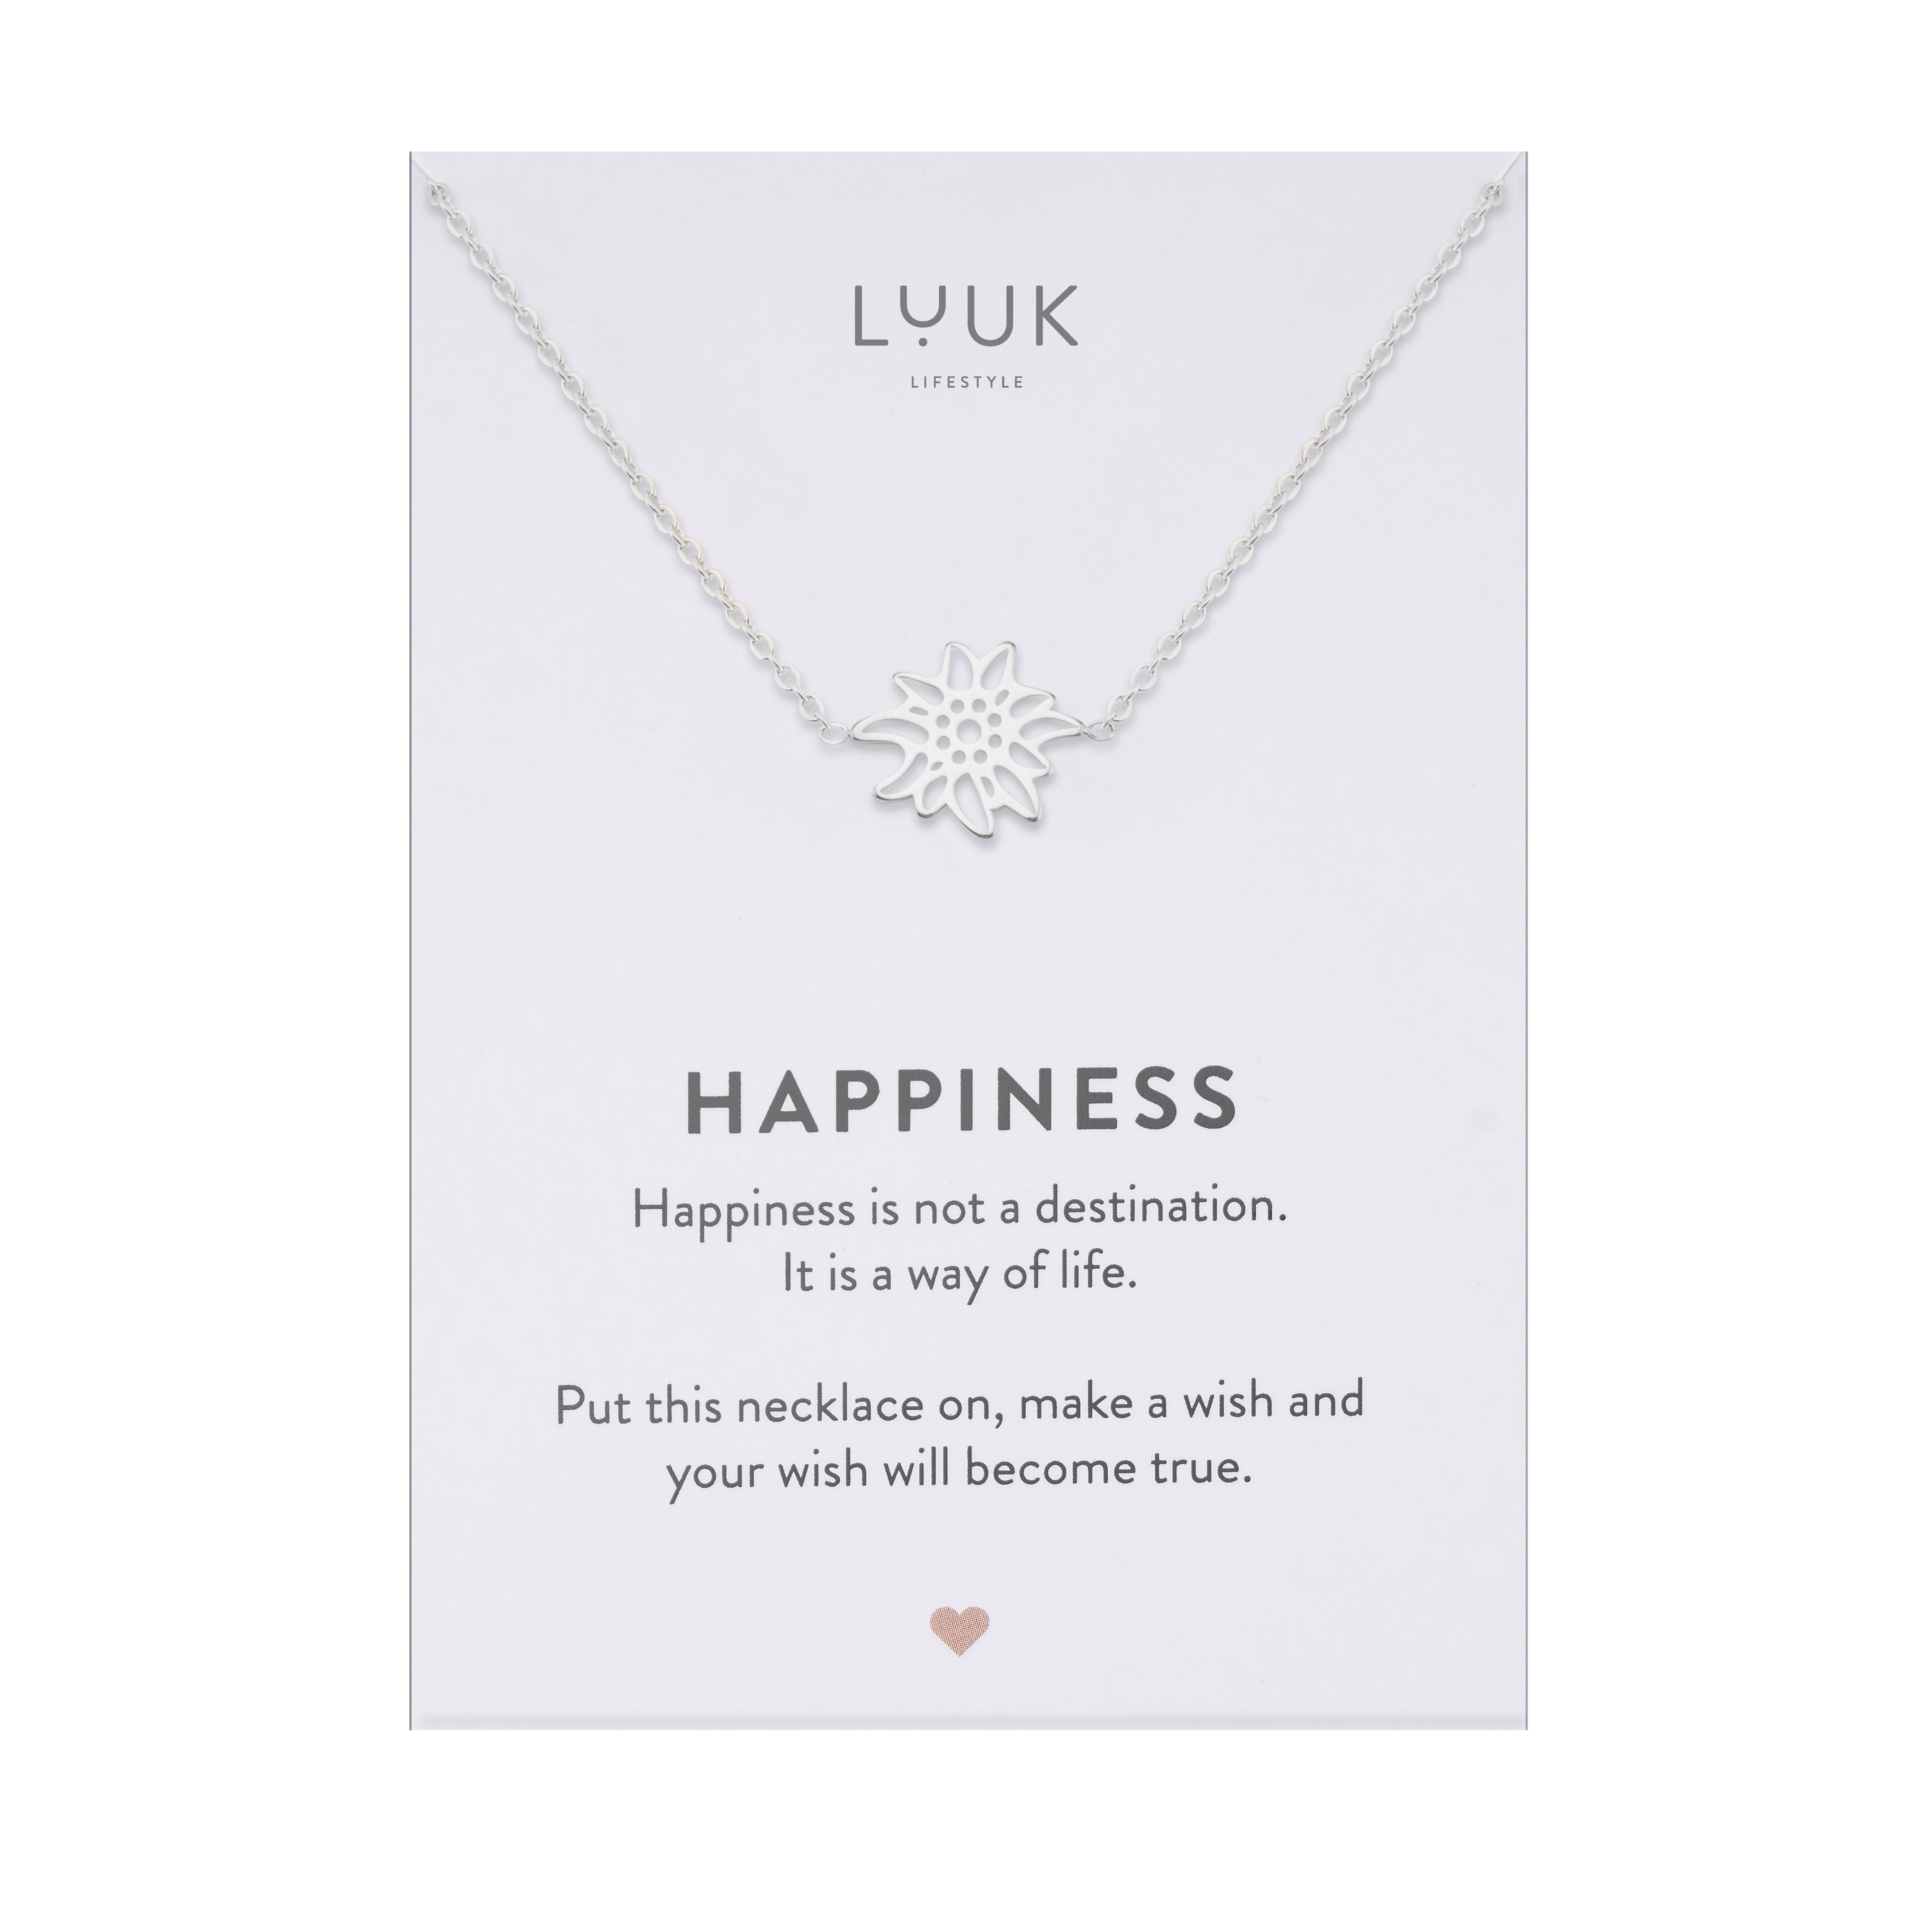 LUUK LIFESTYLE Kette mit Anhänger Edelweiss, mit Happiness Spruchkarte, persönliches Geschenk